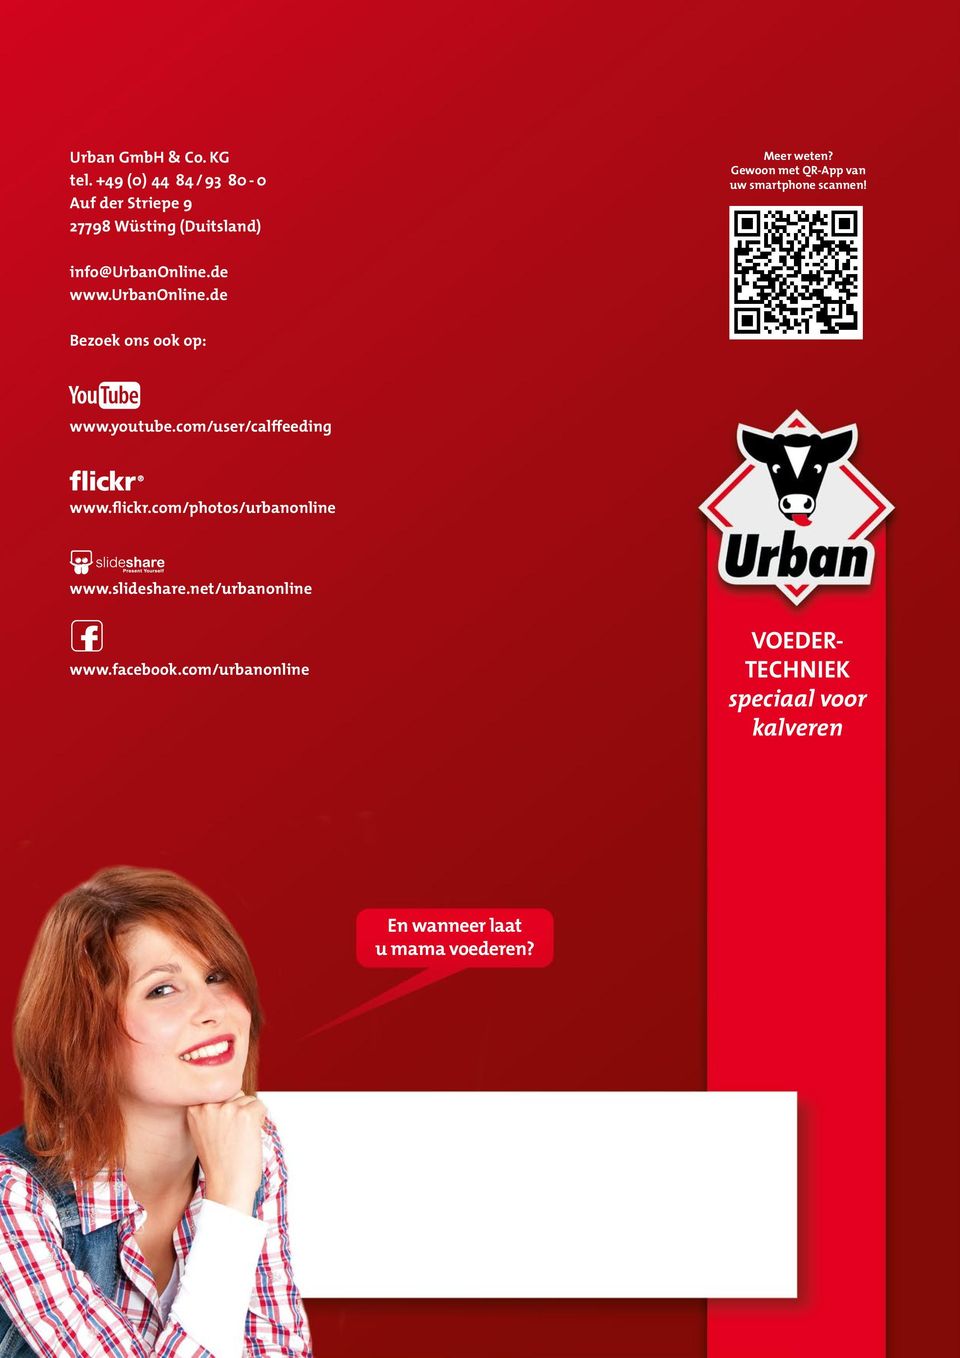 Gewoon met QR-App van uw smartphone scannen! info@urbanonline.de www.urbanonline.de Bezoek ons ook op: www.